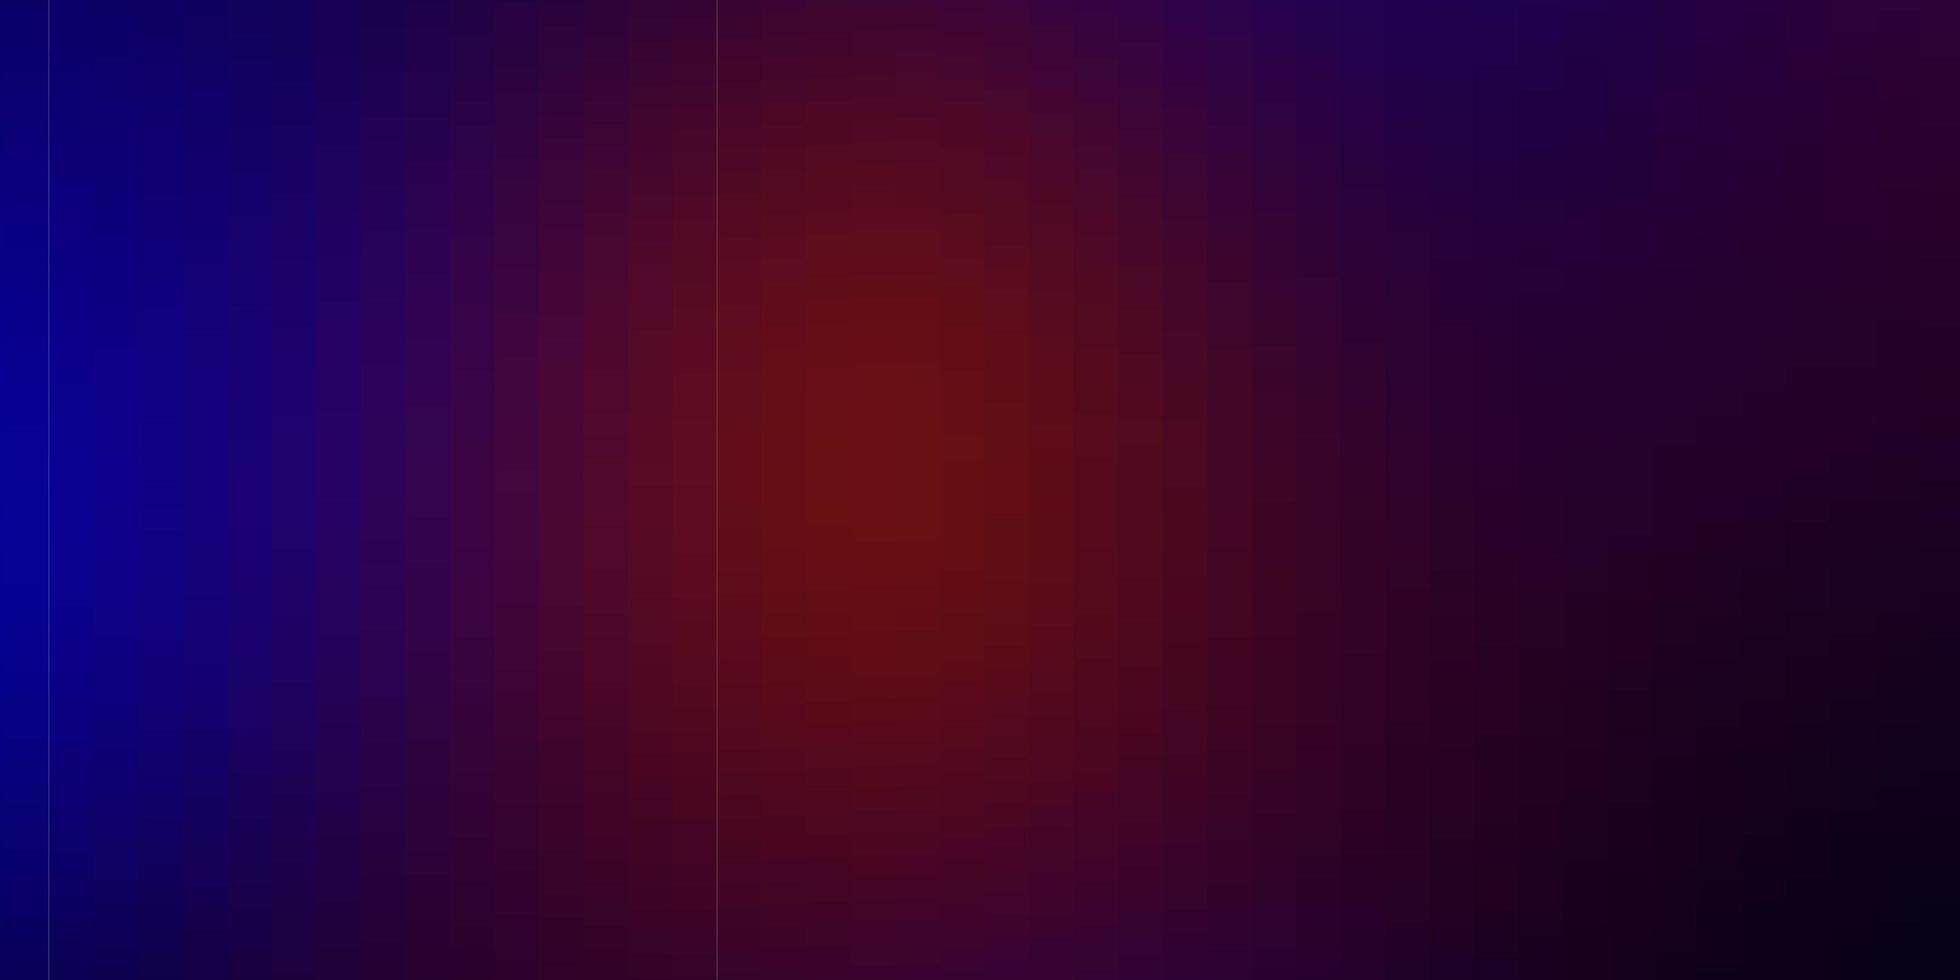 sfondo vettoriale blu scuro, rosso in stile poligonale.